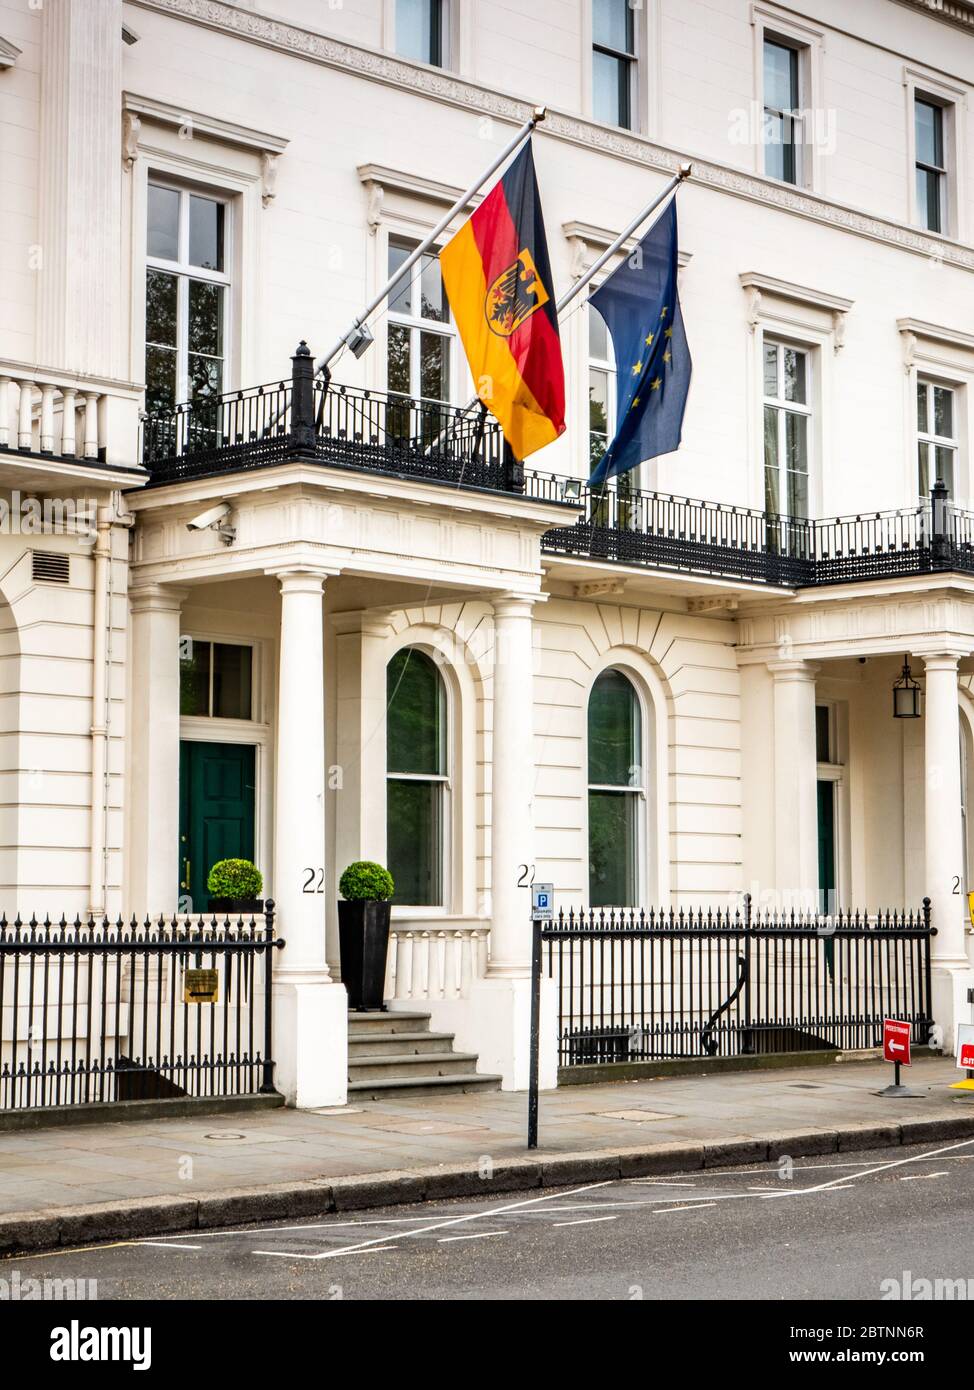 Ambasciata di Germania, Londra, Regno Unito. Le bandiere tedesche e europee che sorvolano un ingresso all'ambasciata tedesca in Piazza Belgravia. Foto Stock